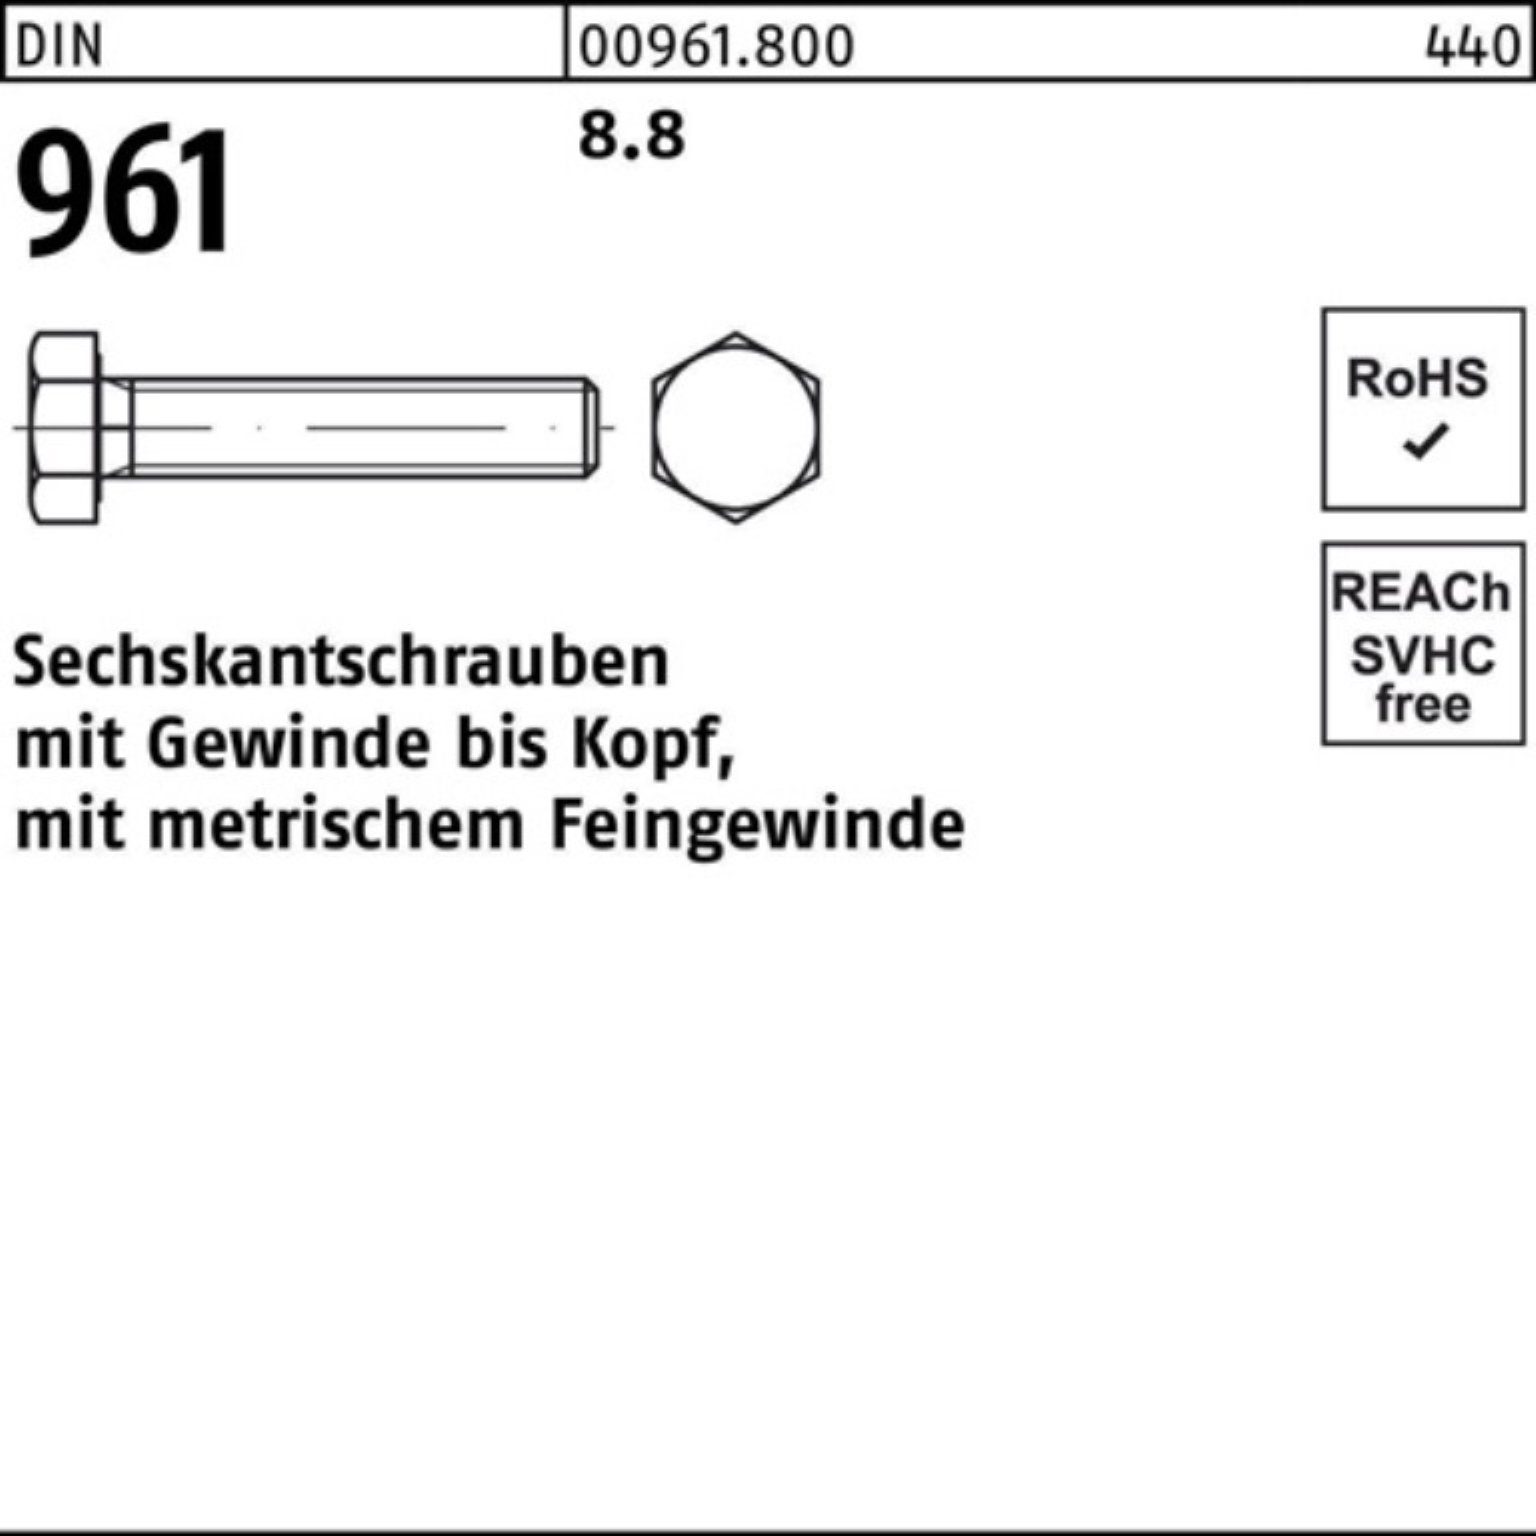 Reyher Sechskantschraube Stück Sechskantschraube M24x1,5x 961 25 50 Pack 8.8 100er DIN DIN VG